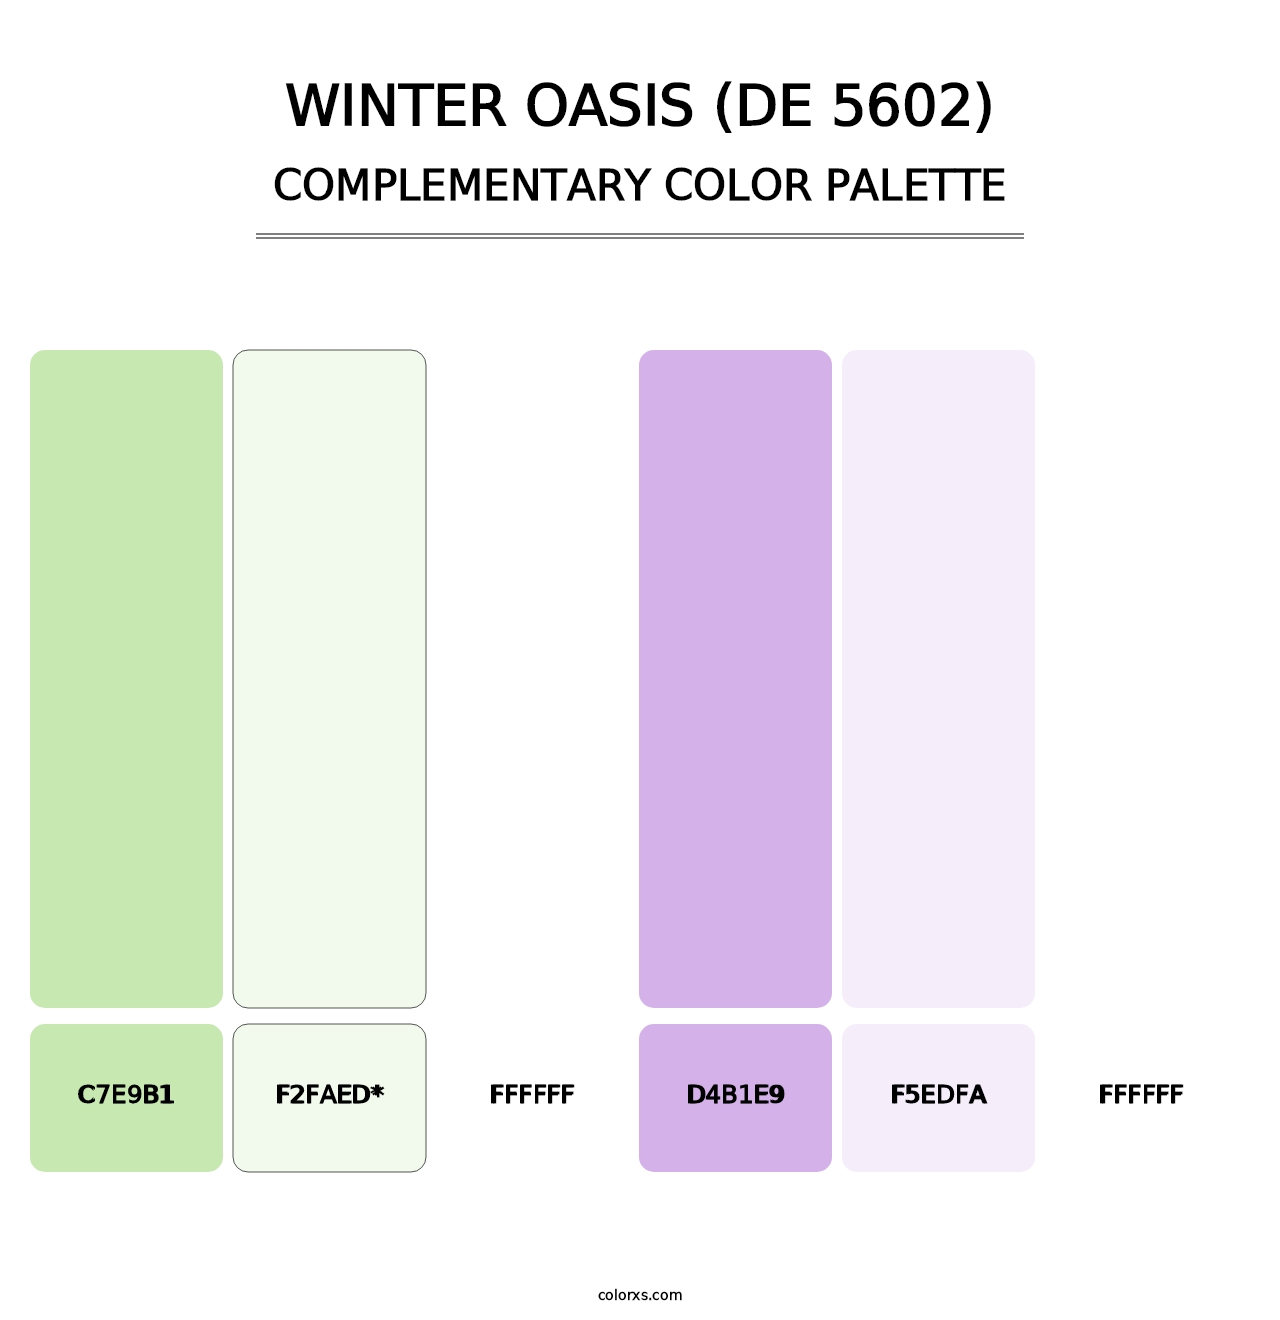 Winter Oasis (DE 5602) - Complementary Color Palette